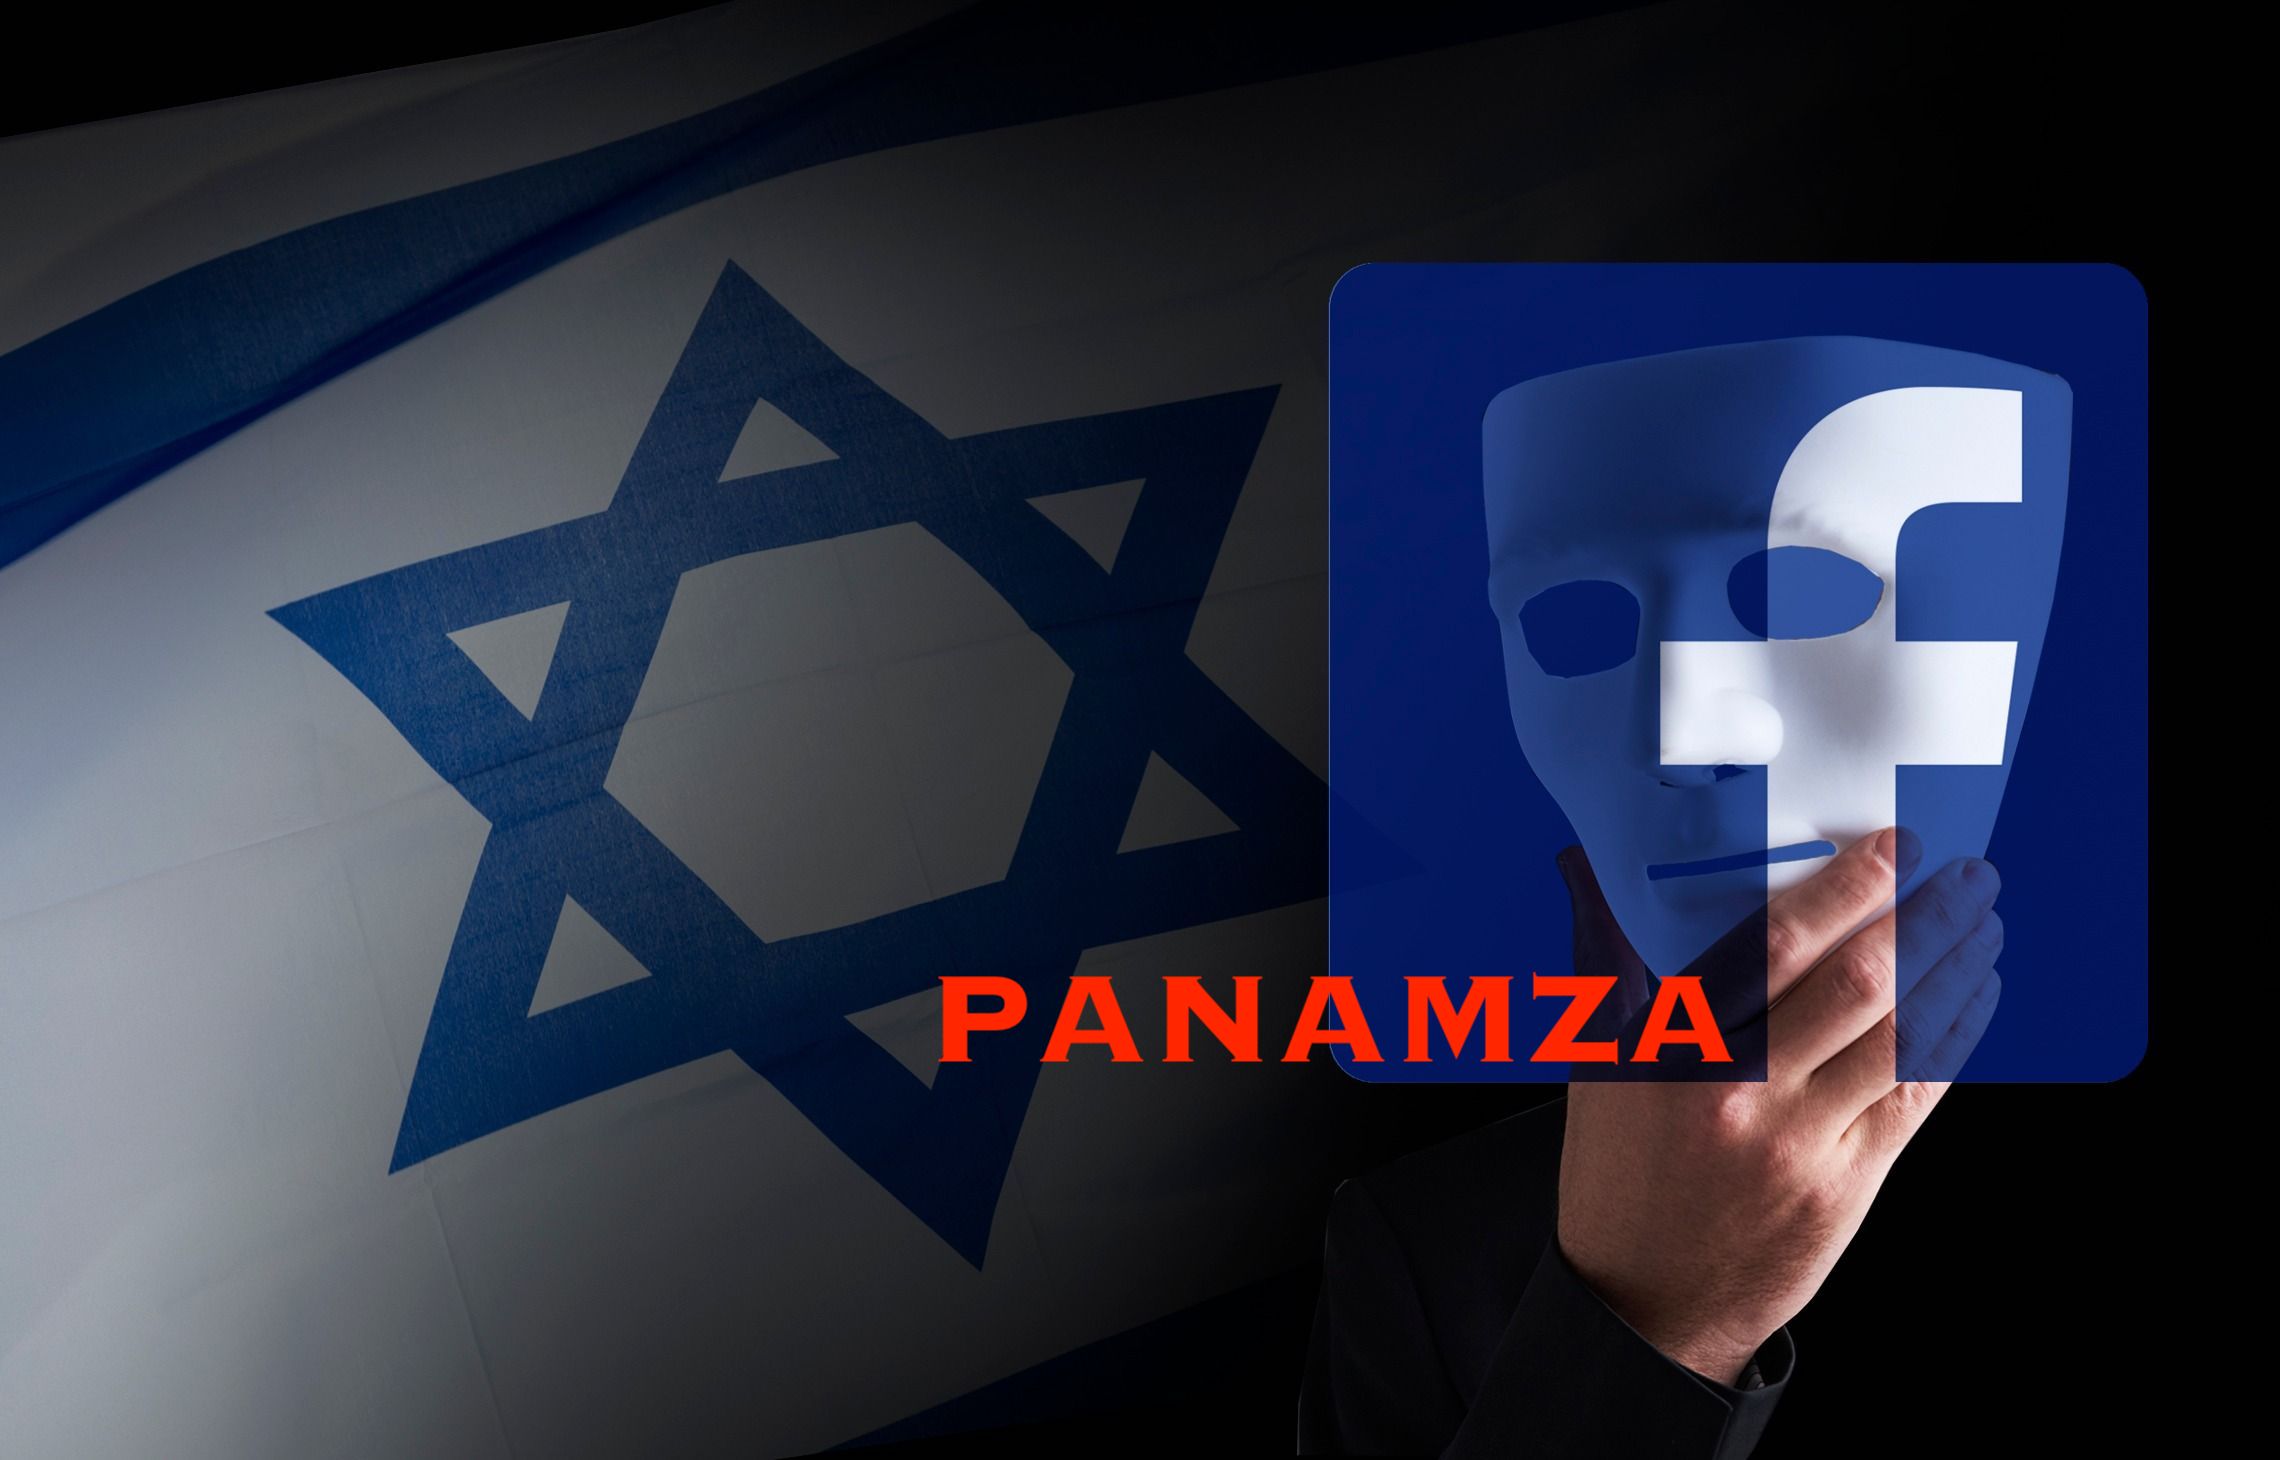 À la demande de l’extrême droite juive, Facebook censure Panamza